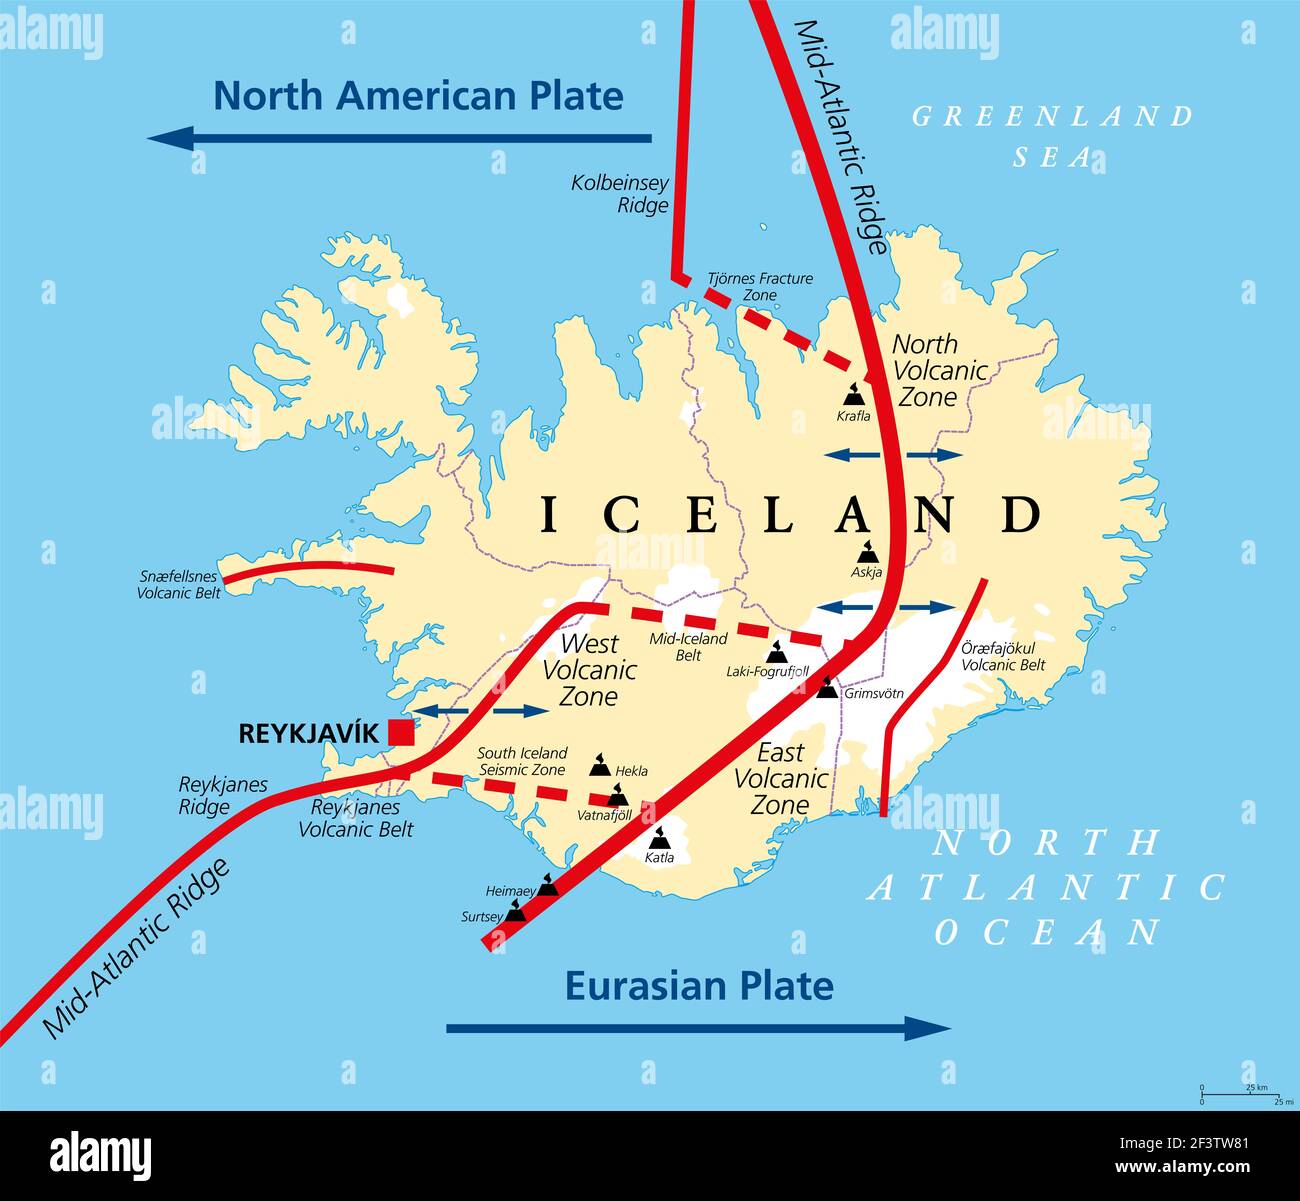 Mapa político de la geología de Islandia. Islandia se encuentra en la frontera divergente entre la placa euroasiática y la placa norteamericana. Mapa con zonas volcánicas. Foto de stock